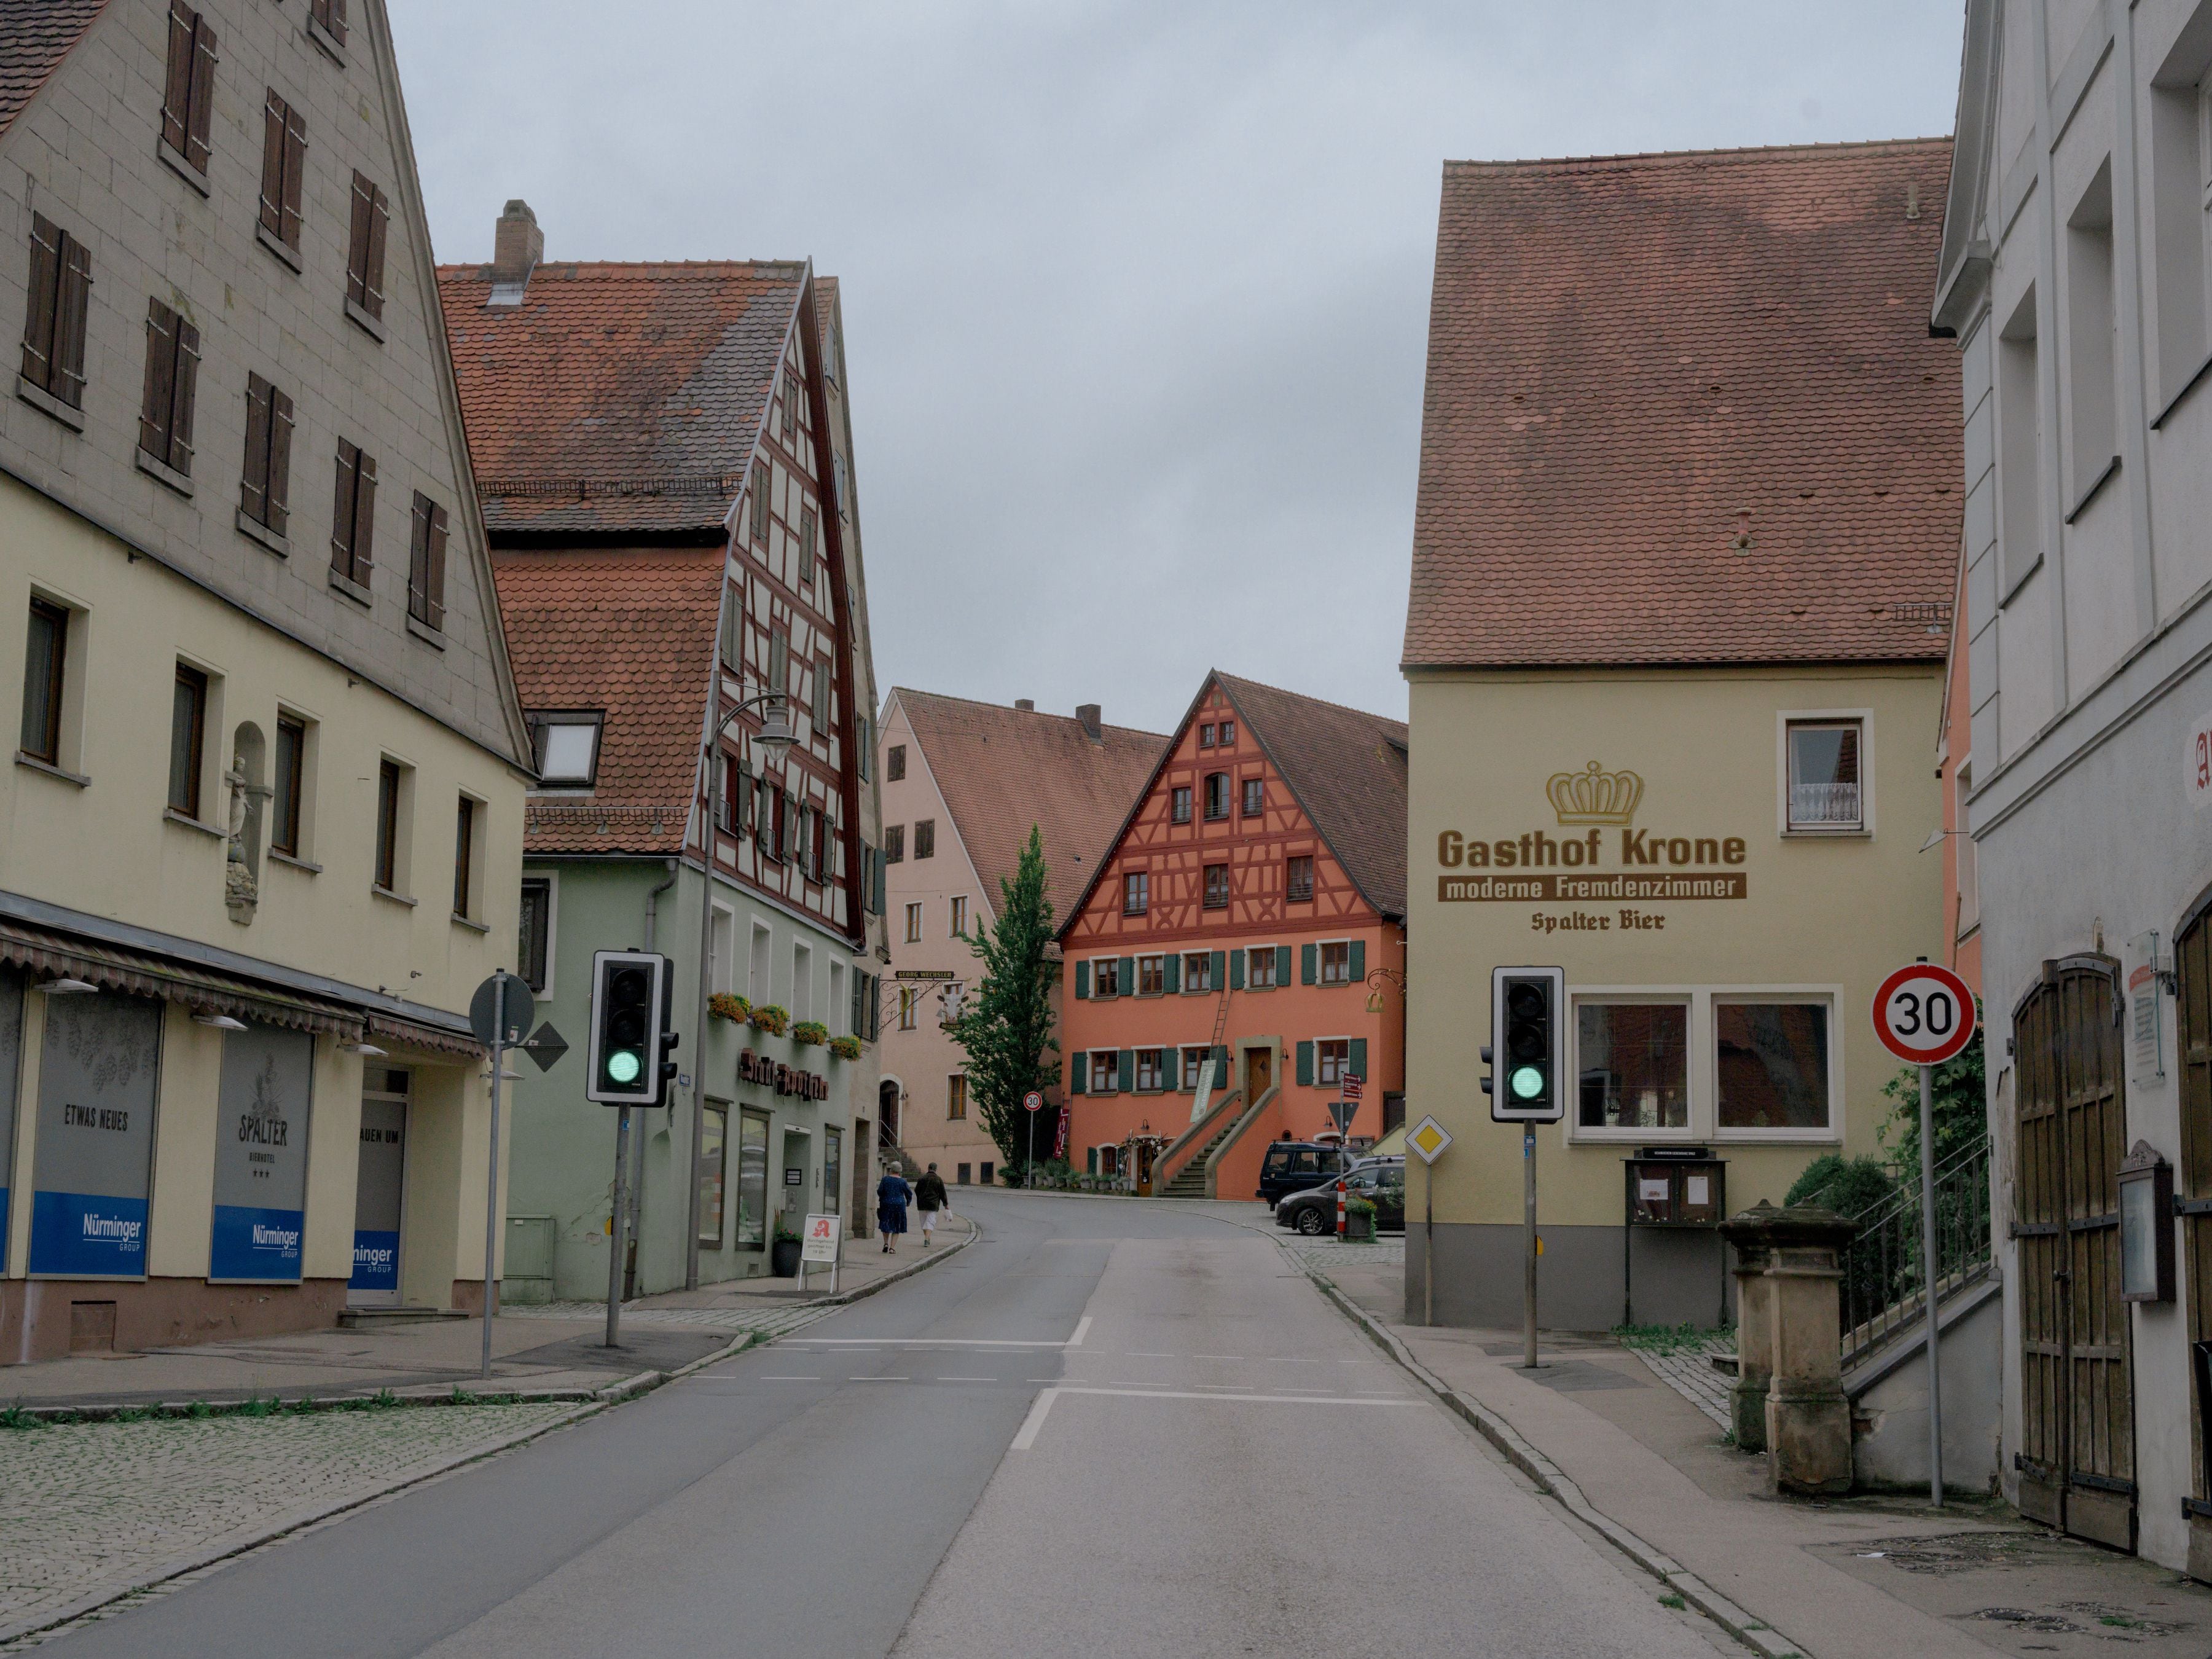 En casi todas las calles de Spalter (Alemania) hay carteles que anuncian "Spalter Bier". Muchos de ellos cuelgan de las casas de entramado de madera y tejados rojos que se construyeron hace siglos para almacenar y secar el lúpulo (Ingmar Nolting/The New York Times)